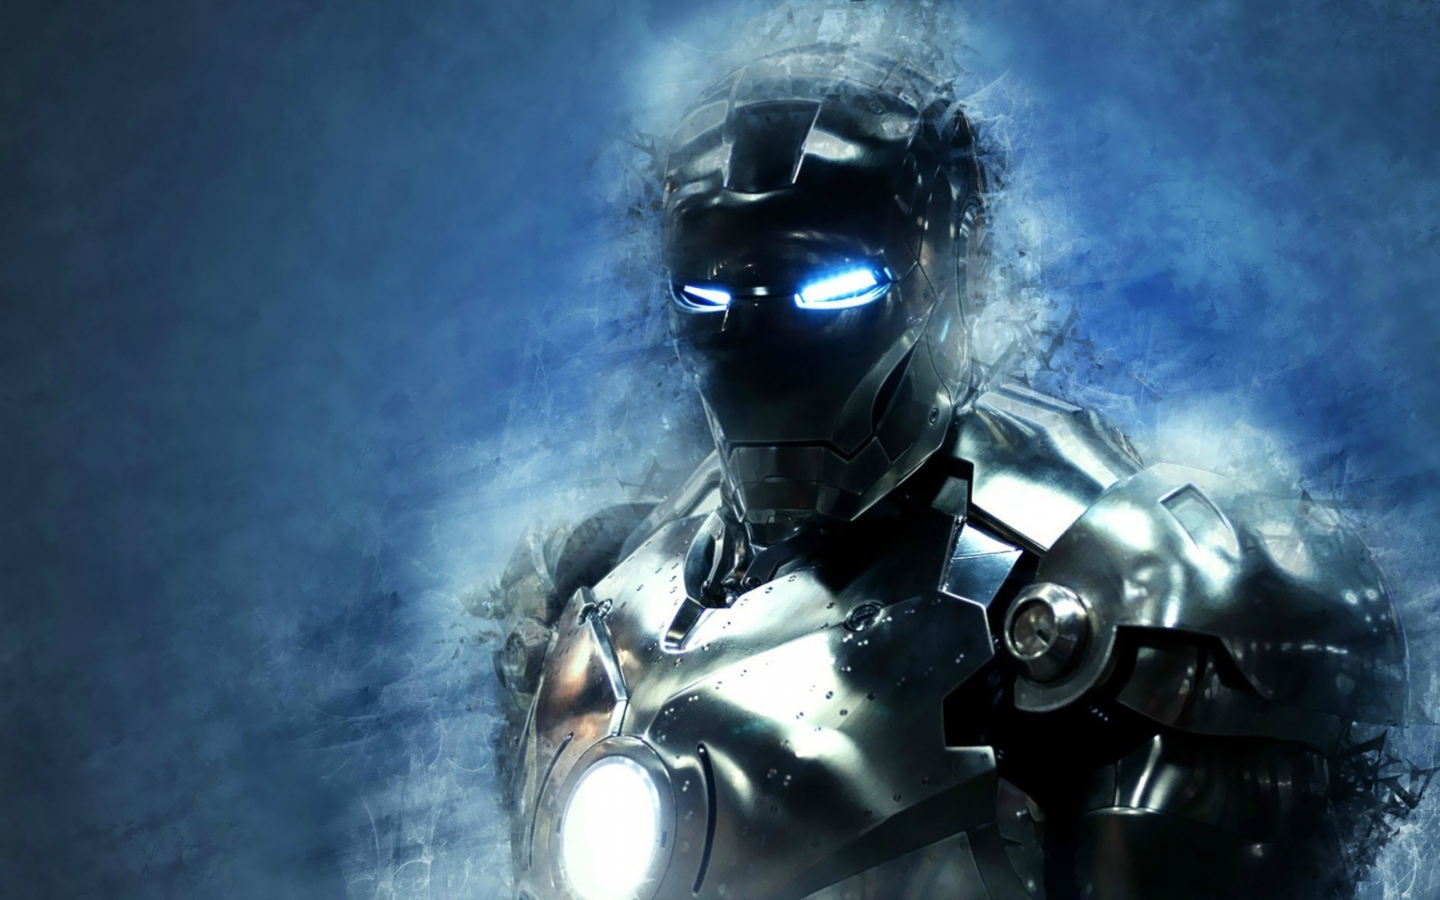 Iron Man 3 Metal Art for 1440 x 900 widescreen resolution